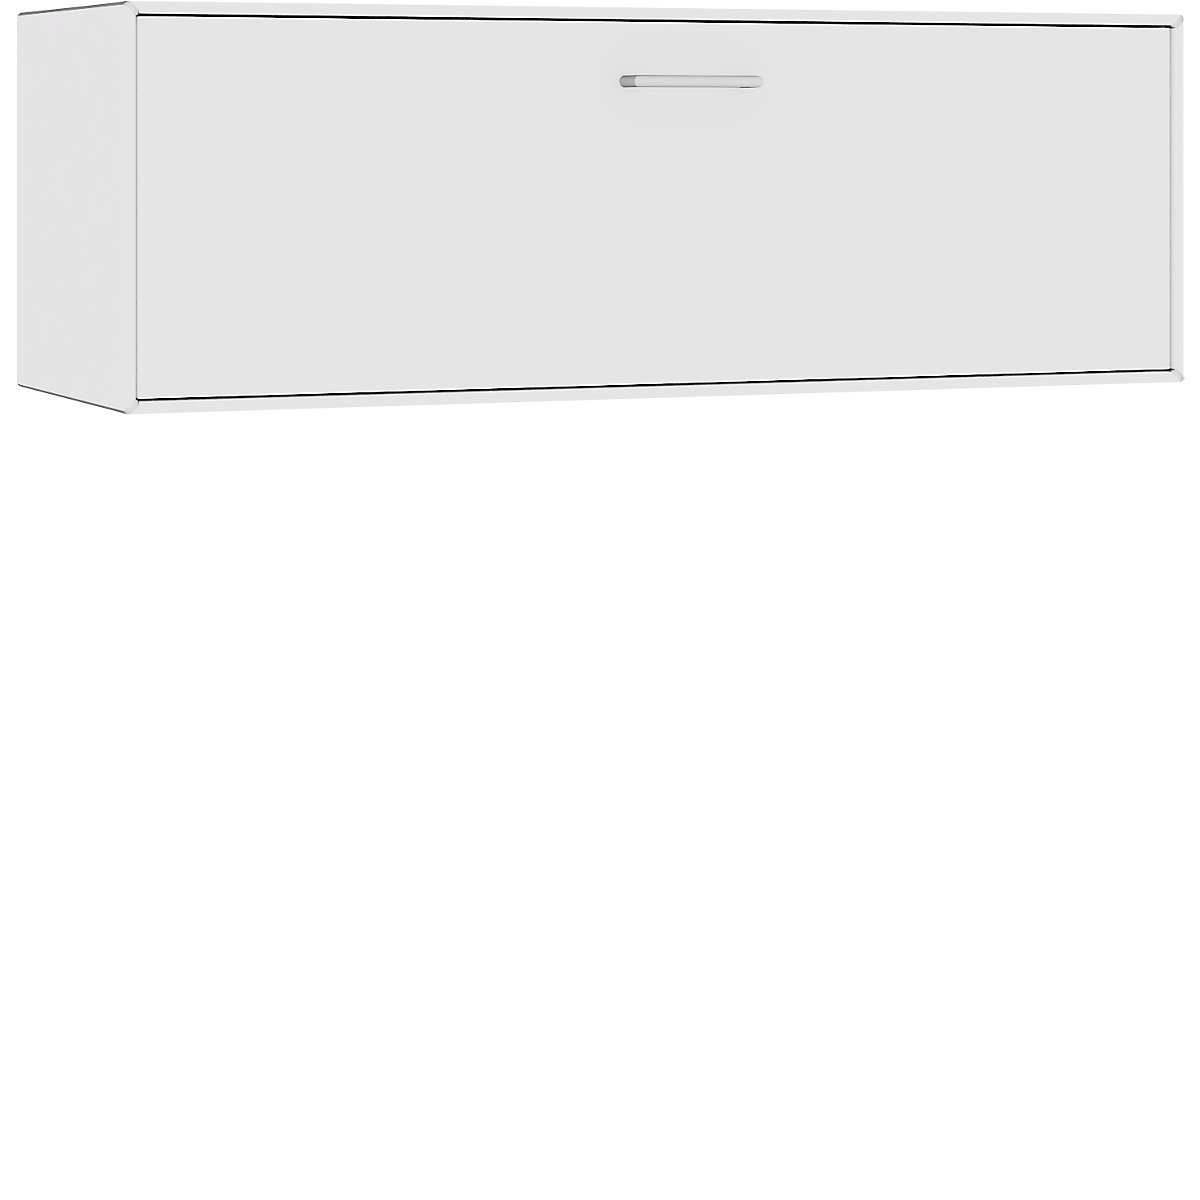 Cuie individuală, suspendată – mauser, 1 sertar, lățime 1155 mm, alb pur-2